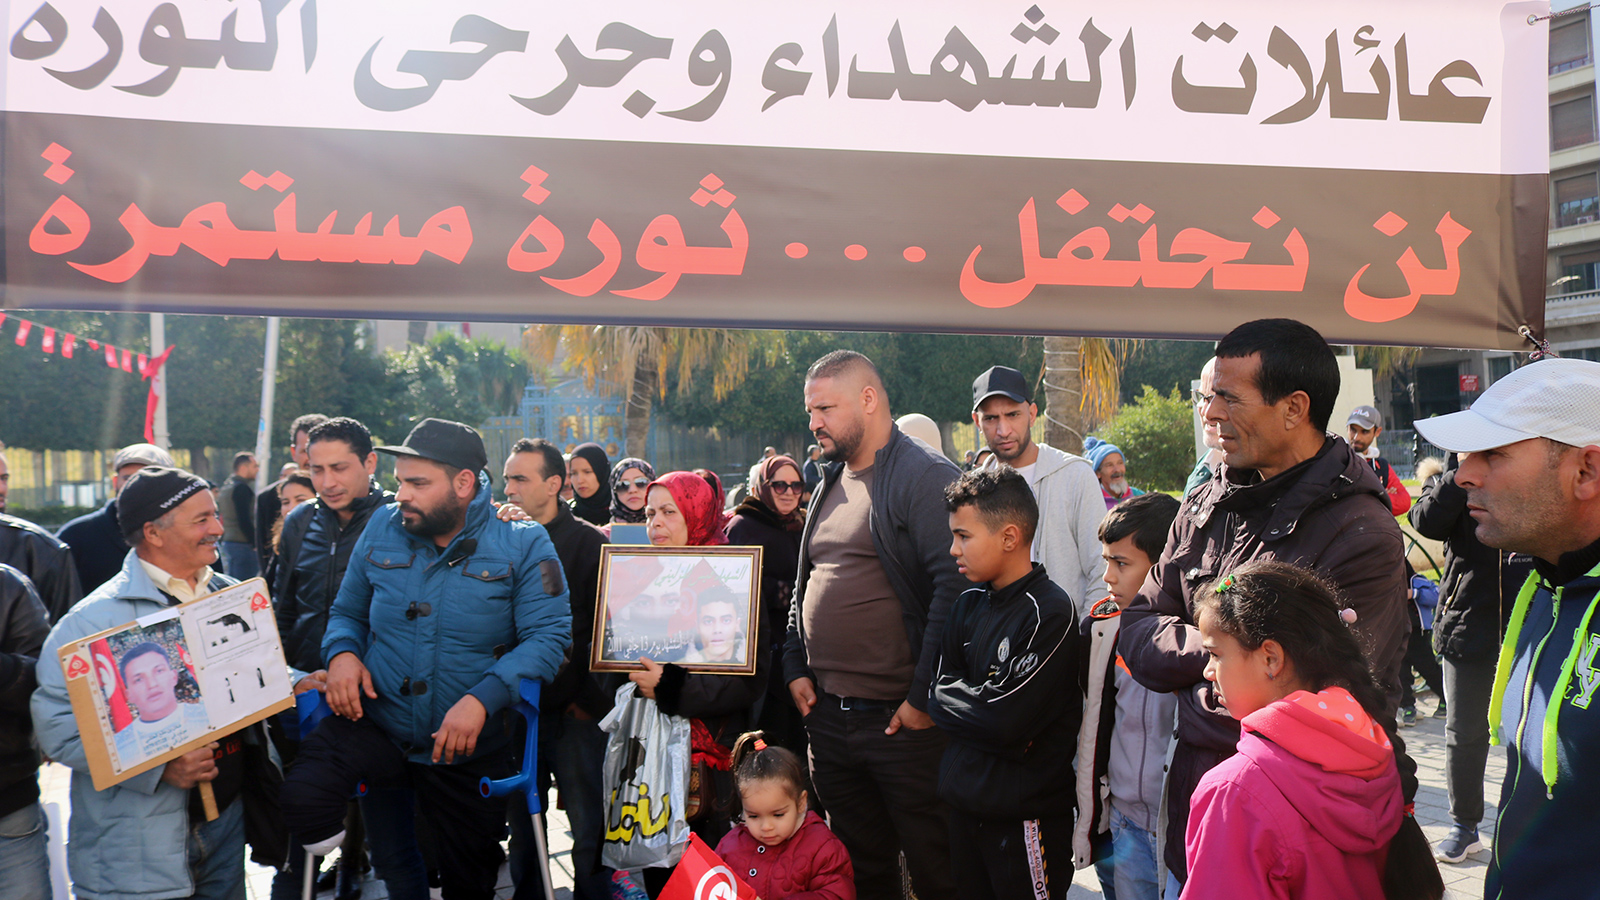 ‪عائلات شهداء الثورة وجرحاها لا يزالون بانتظار صدور القائمة النهائية لشهداء الثورة وجرحاها‬ (الجزيرة)